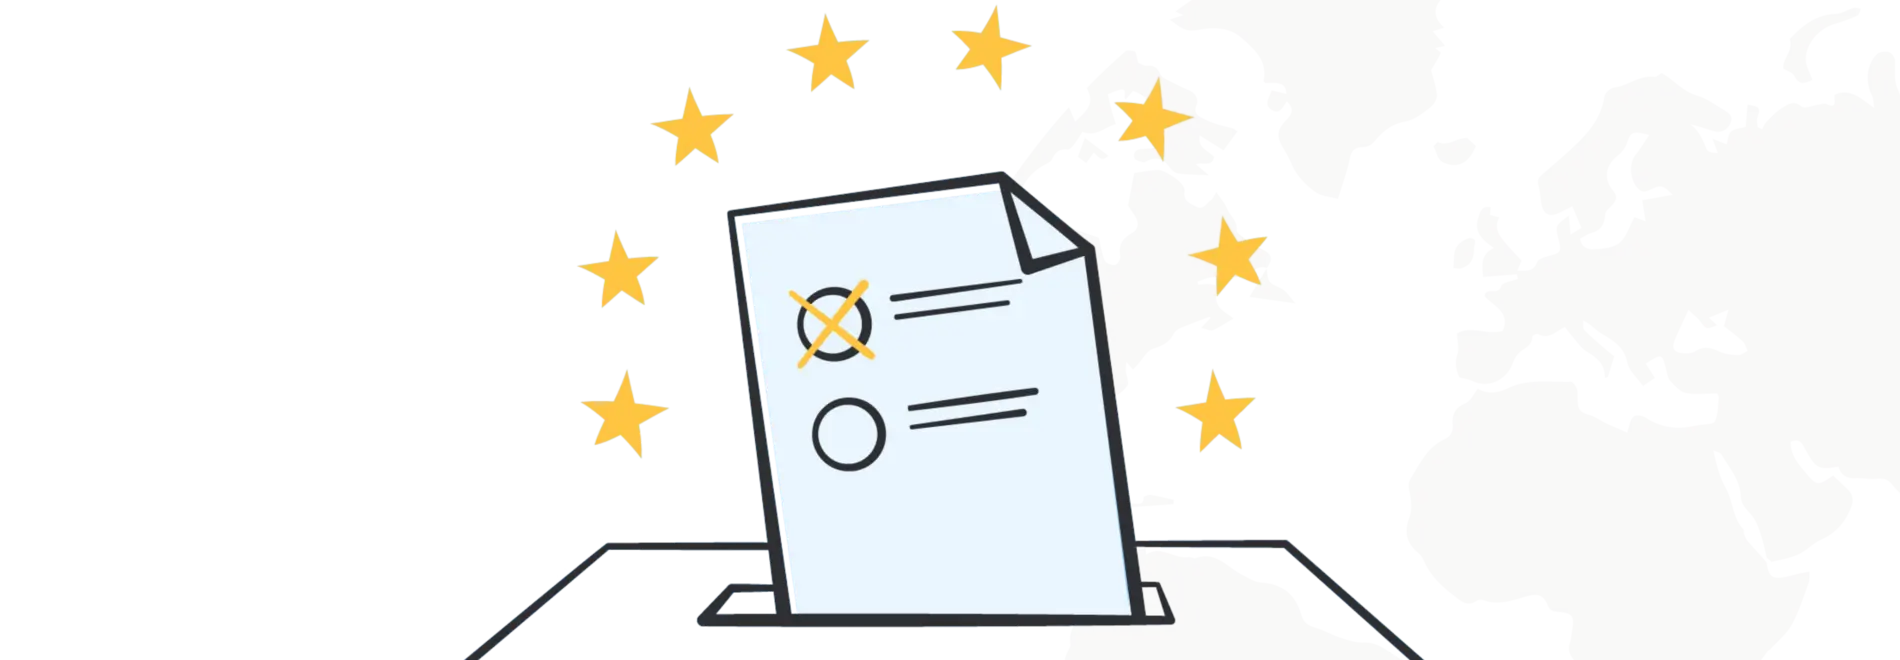 Illustration Europa auf der Weltkarte mit einer Wahlurne und den Europa-Sternen